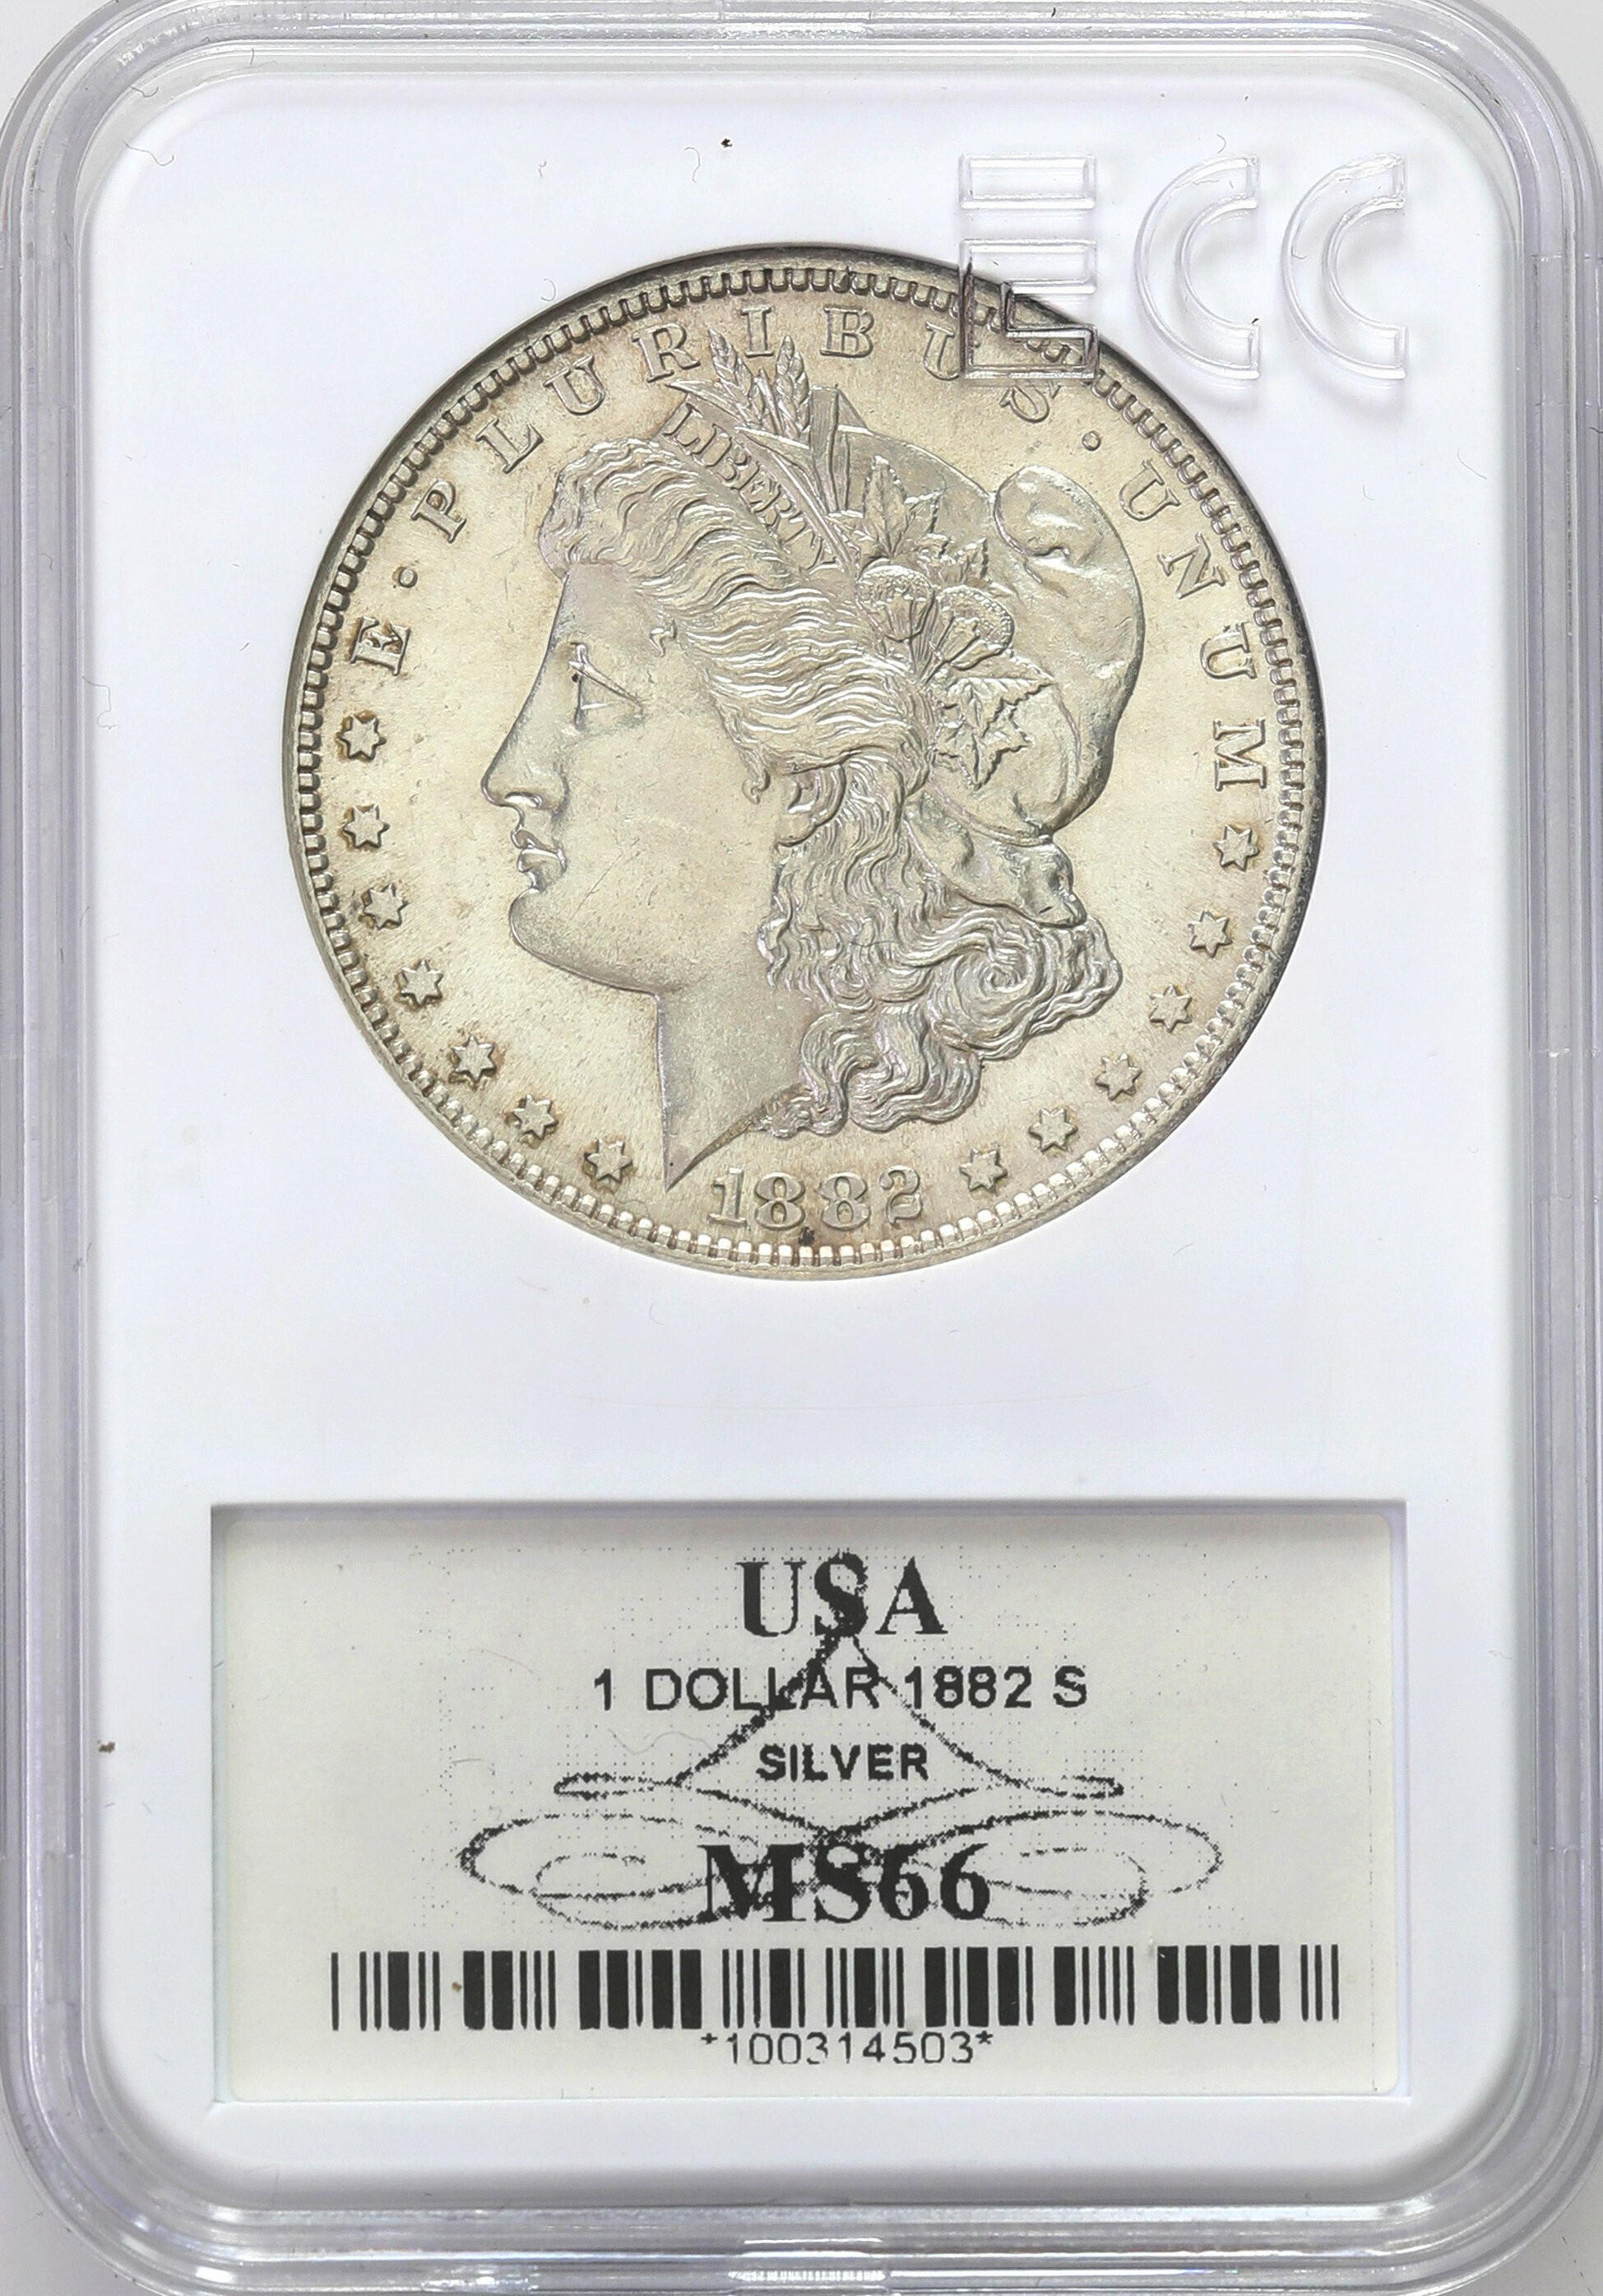 USA. Dolar 1882 S, San Francisco GCN MS66 - PIĘKNE